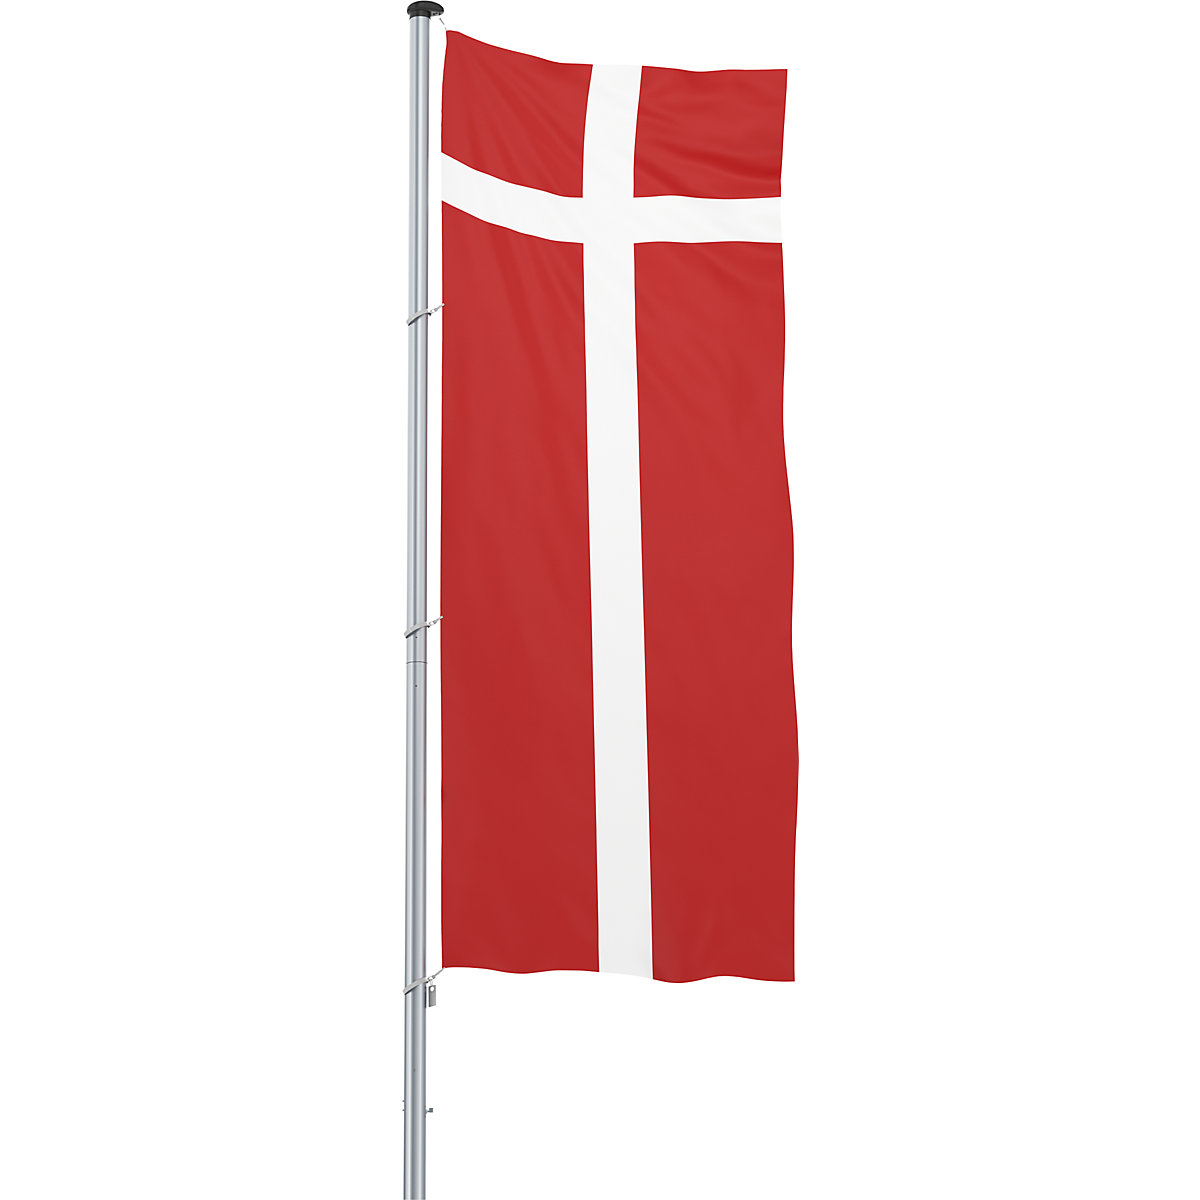 Mannus – Bandera para izar/bandera del país, formato 1,2 x 3 m, Dinamarca